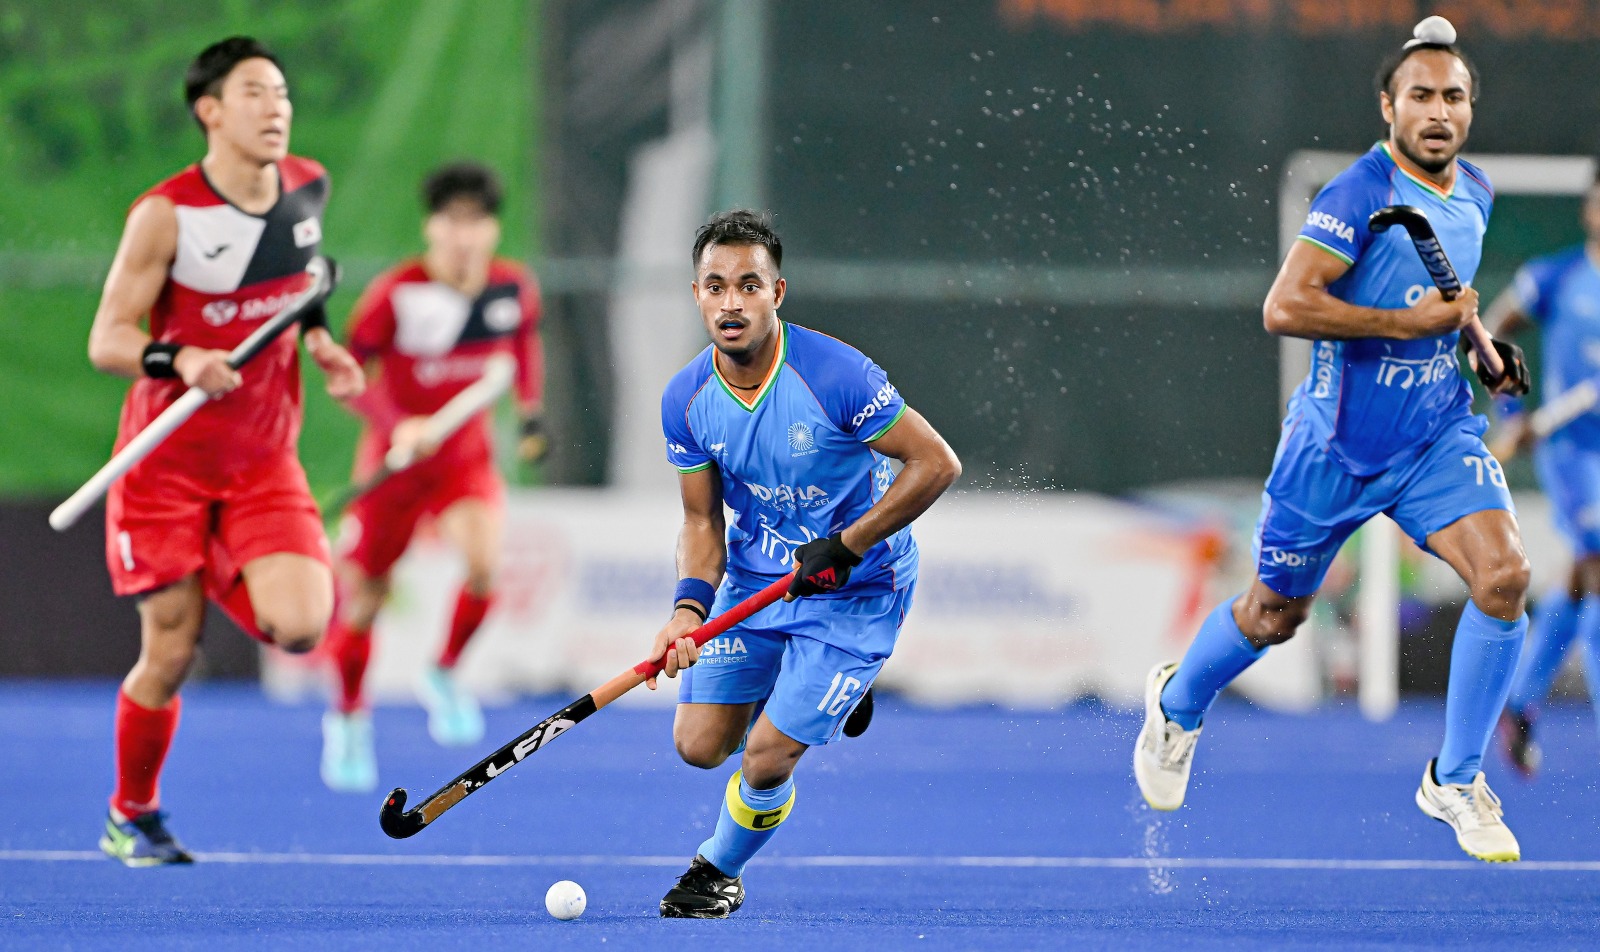 India se enfrentará a España en el partido por el tercer y cuarto lugar de la Copa Mundial de Hockey Juvenil Masculino Malasia 2023.